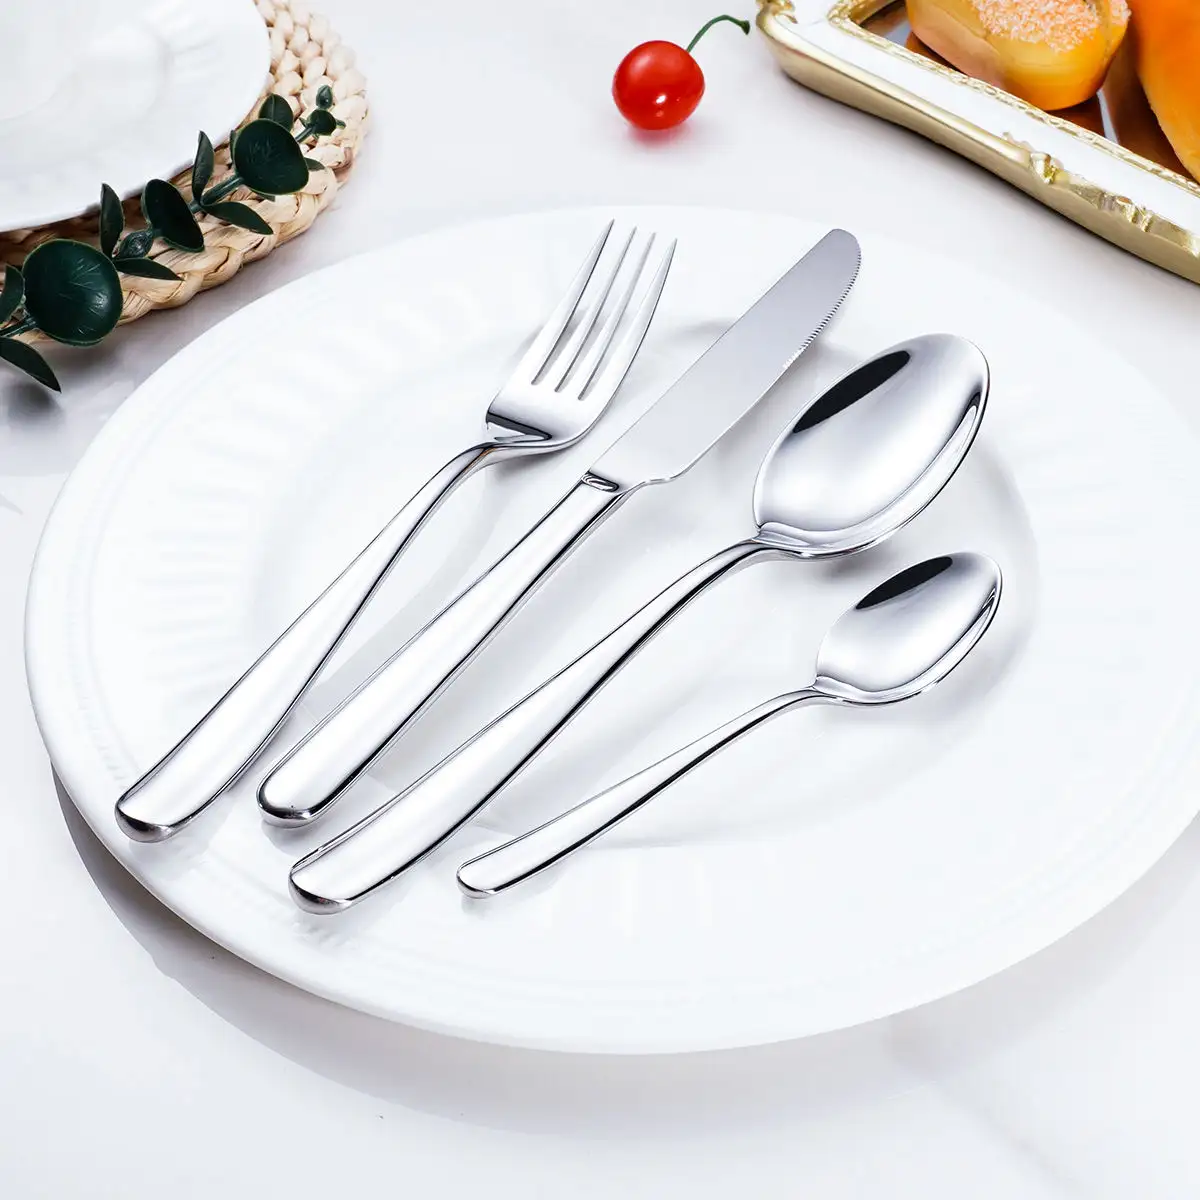 Europa vendita calda ristorante argenteria posate da sposa in acciaio inox cena coltello e forchetta cucchiaio servire posate Set